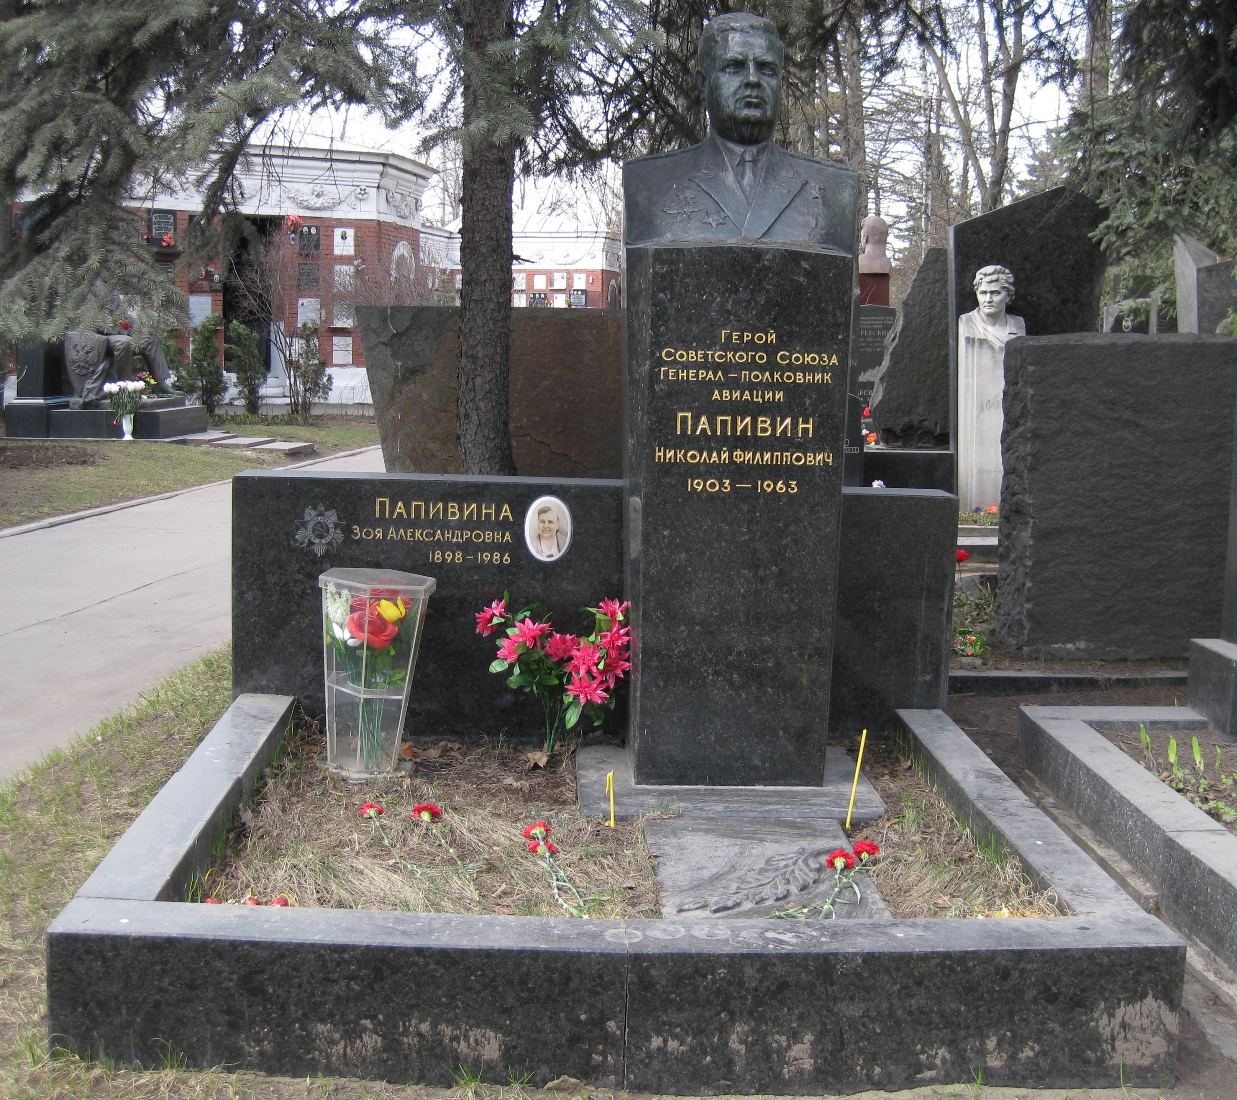 Памятник на могиле Папивина Н.Ф. (1903-1963), на Новодевичьем кладбище (8-28-9).